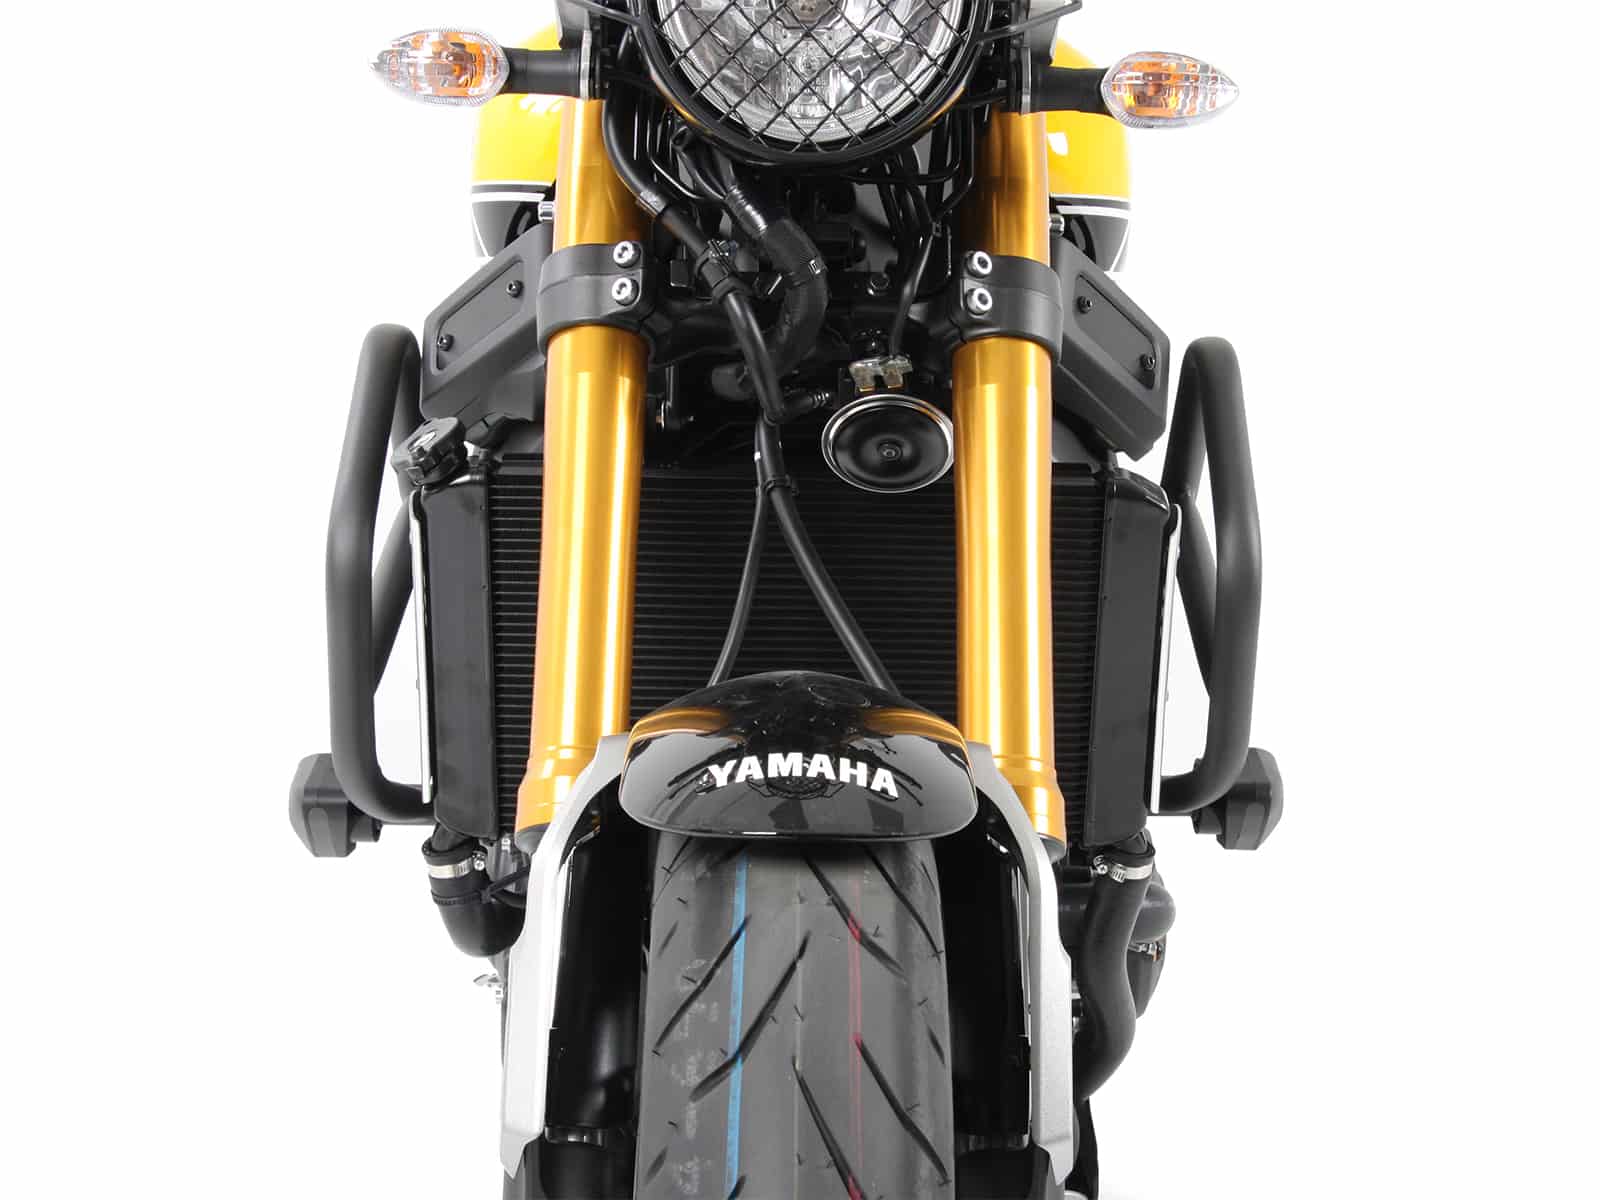 desde 2016 Yamaha XSR900 Motor Guard-Antracita por Hepco & Becker